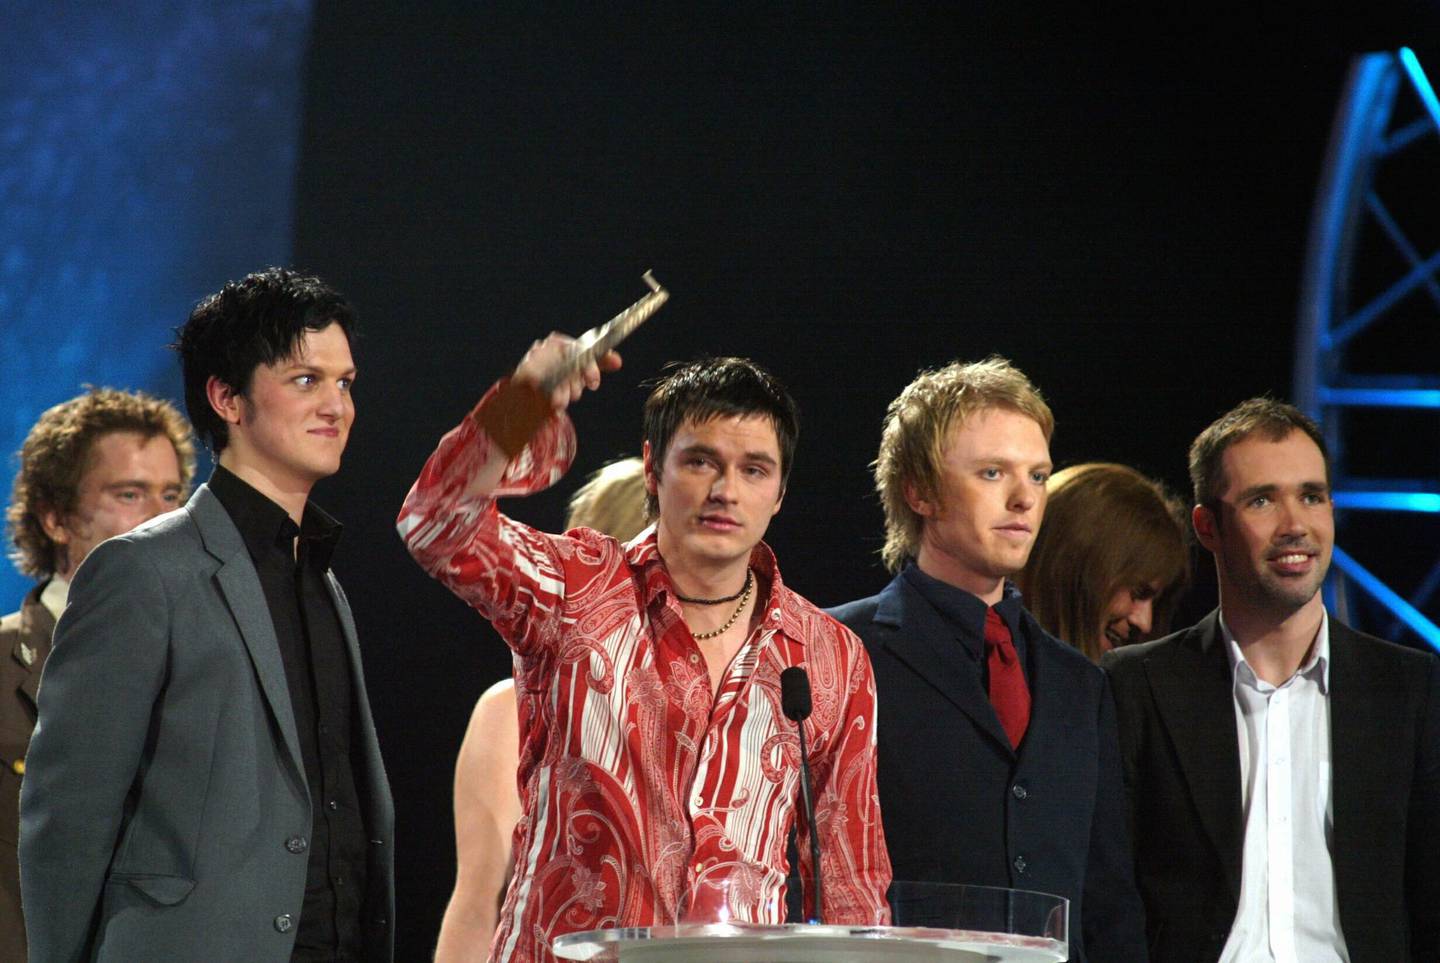 Kaizers Orchestra vant Spellemannprisen i i rock for "Ompa til du dør" i 2001.